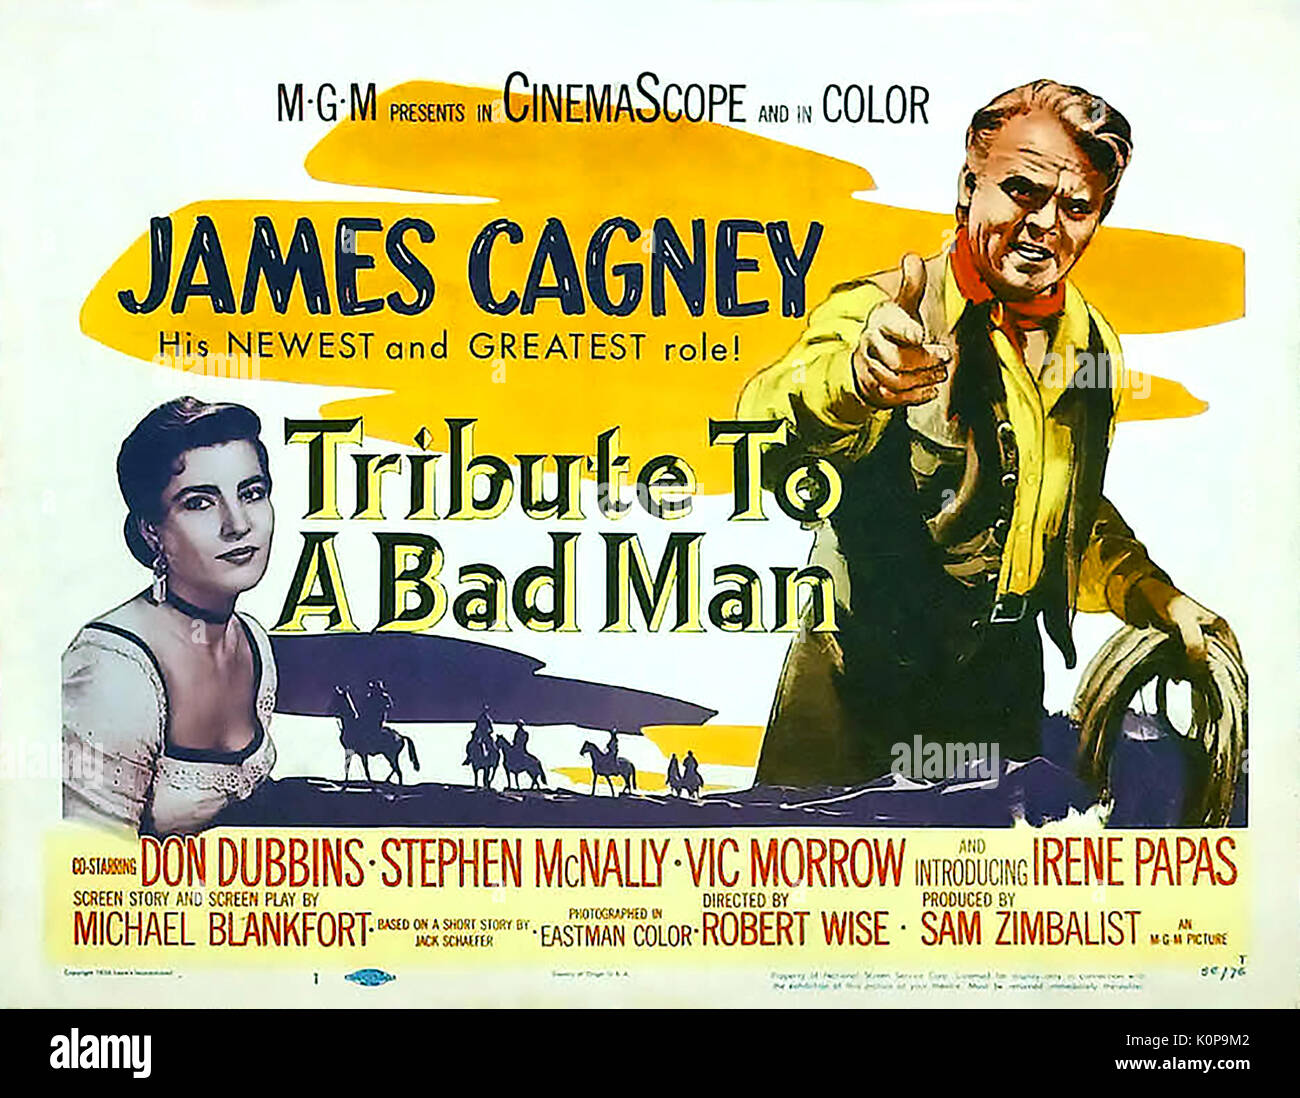 Hommage à un mauvais homme 1956 MGM film Western avec James Cagney et Irene Papas Banque D'Images